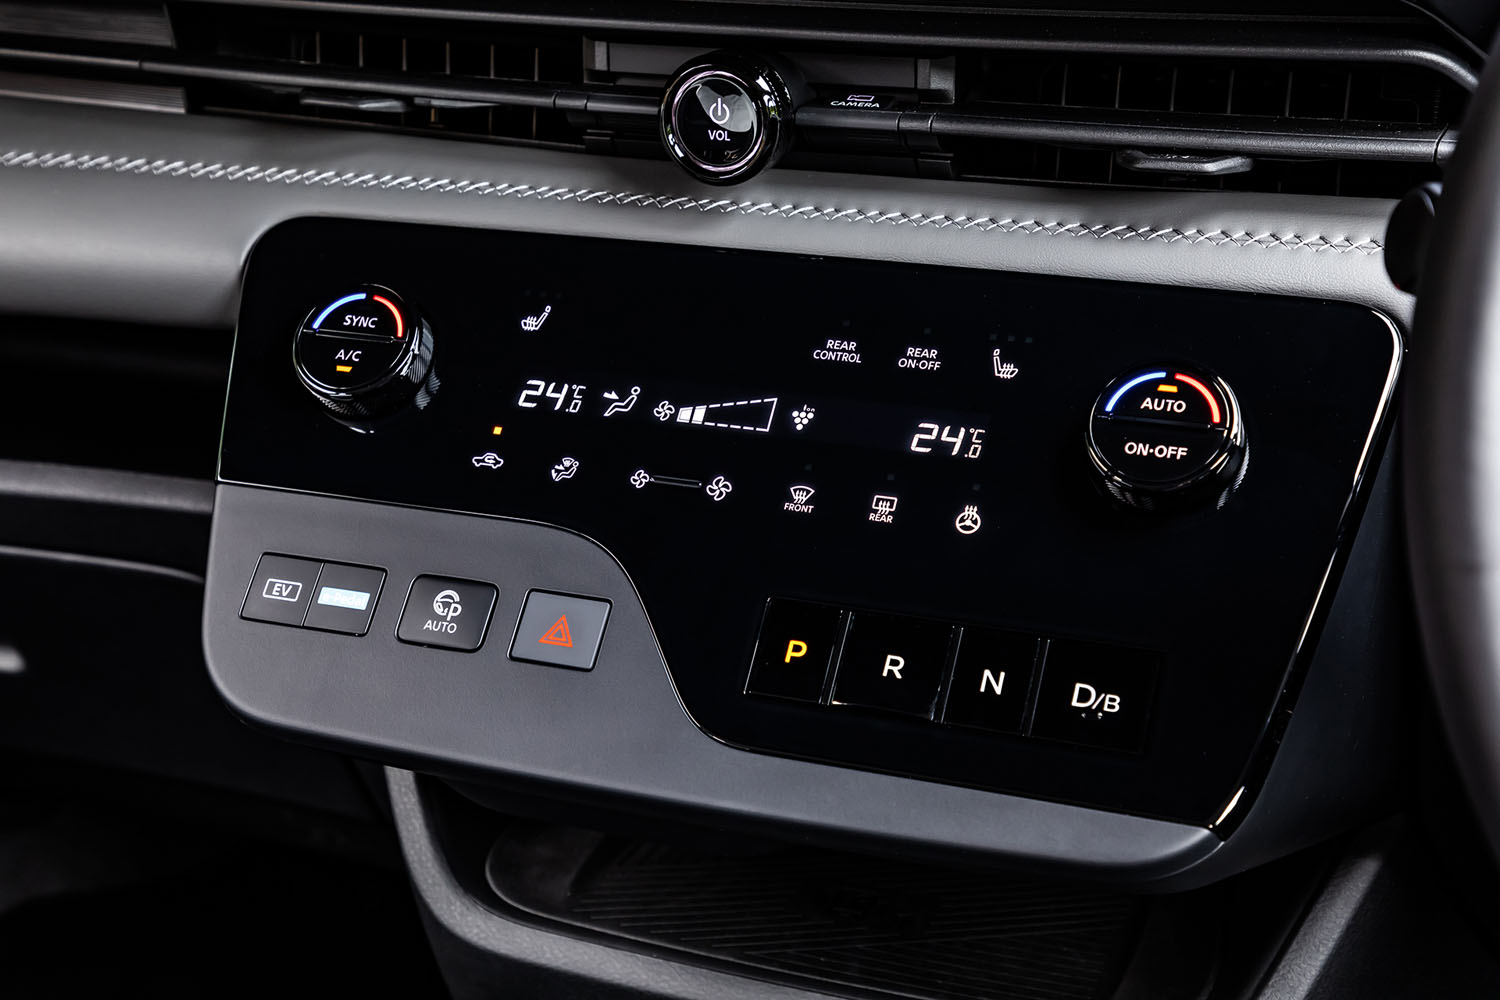 乗車定員の多いミニバンとしての使い勝手を検討のうえ、ダイヤル式のコントローラーを残しタッチスイッチと組み合わせたというエアコンの操作パネル。シフトセレクターは押しボタン式となっている。